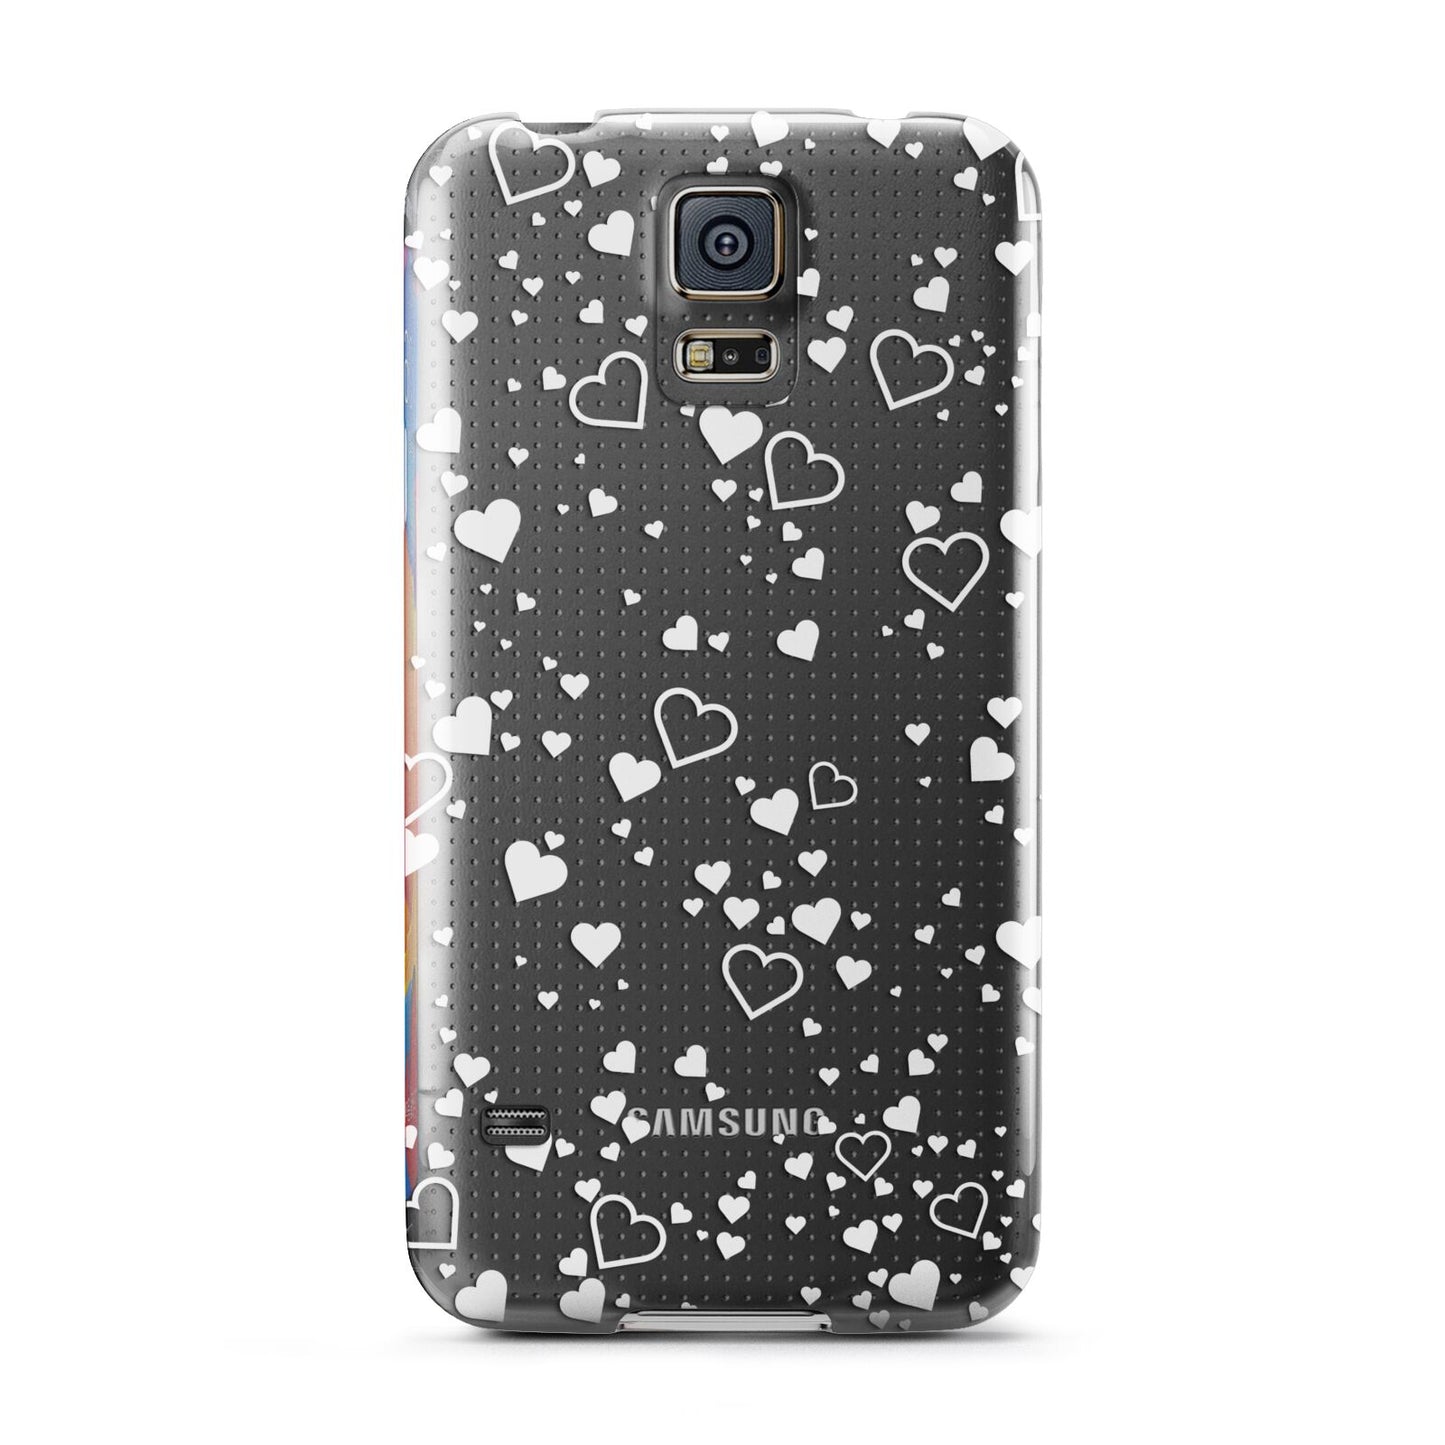 White Heart Samsung Galaxy S5 Case